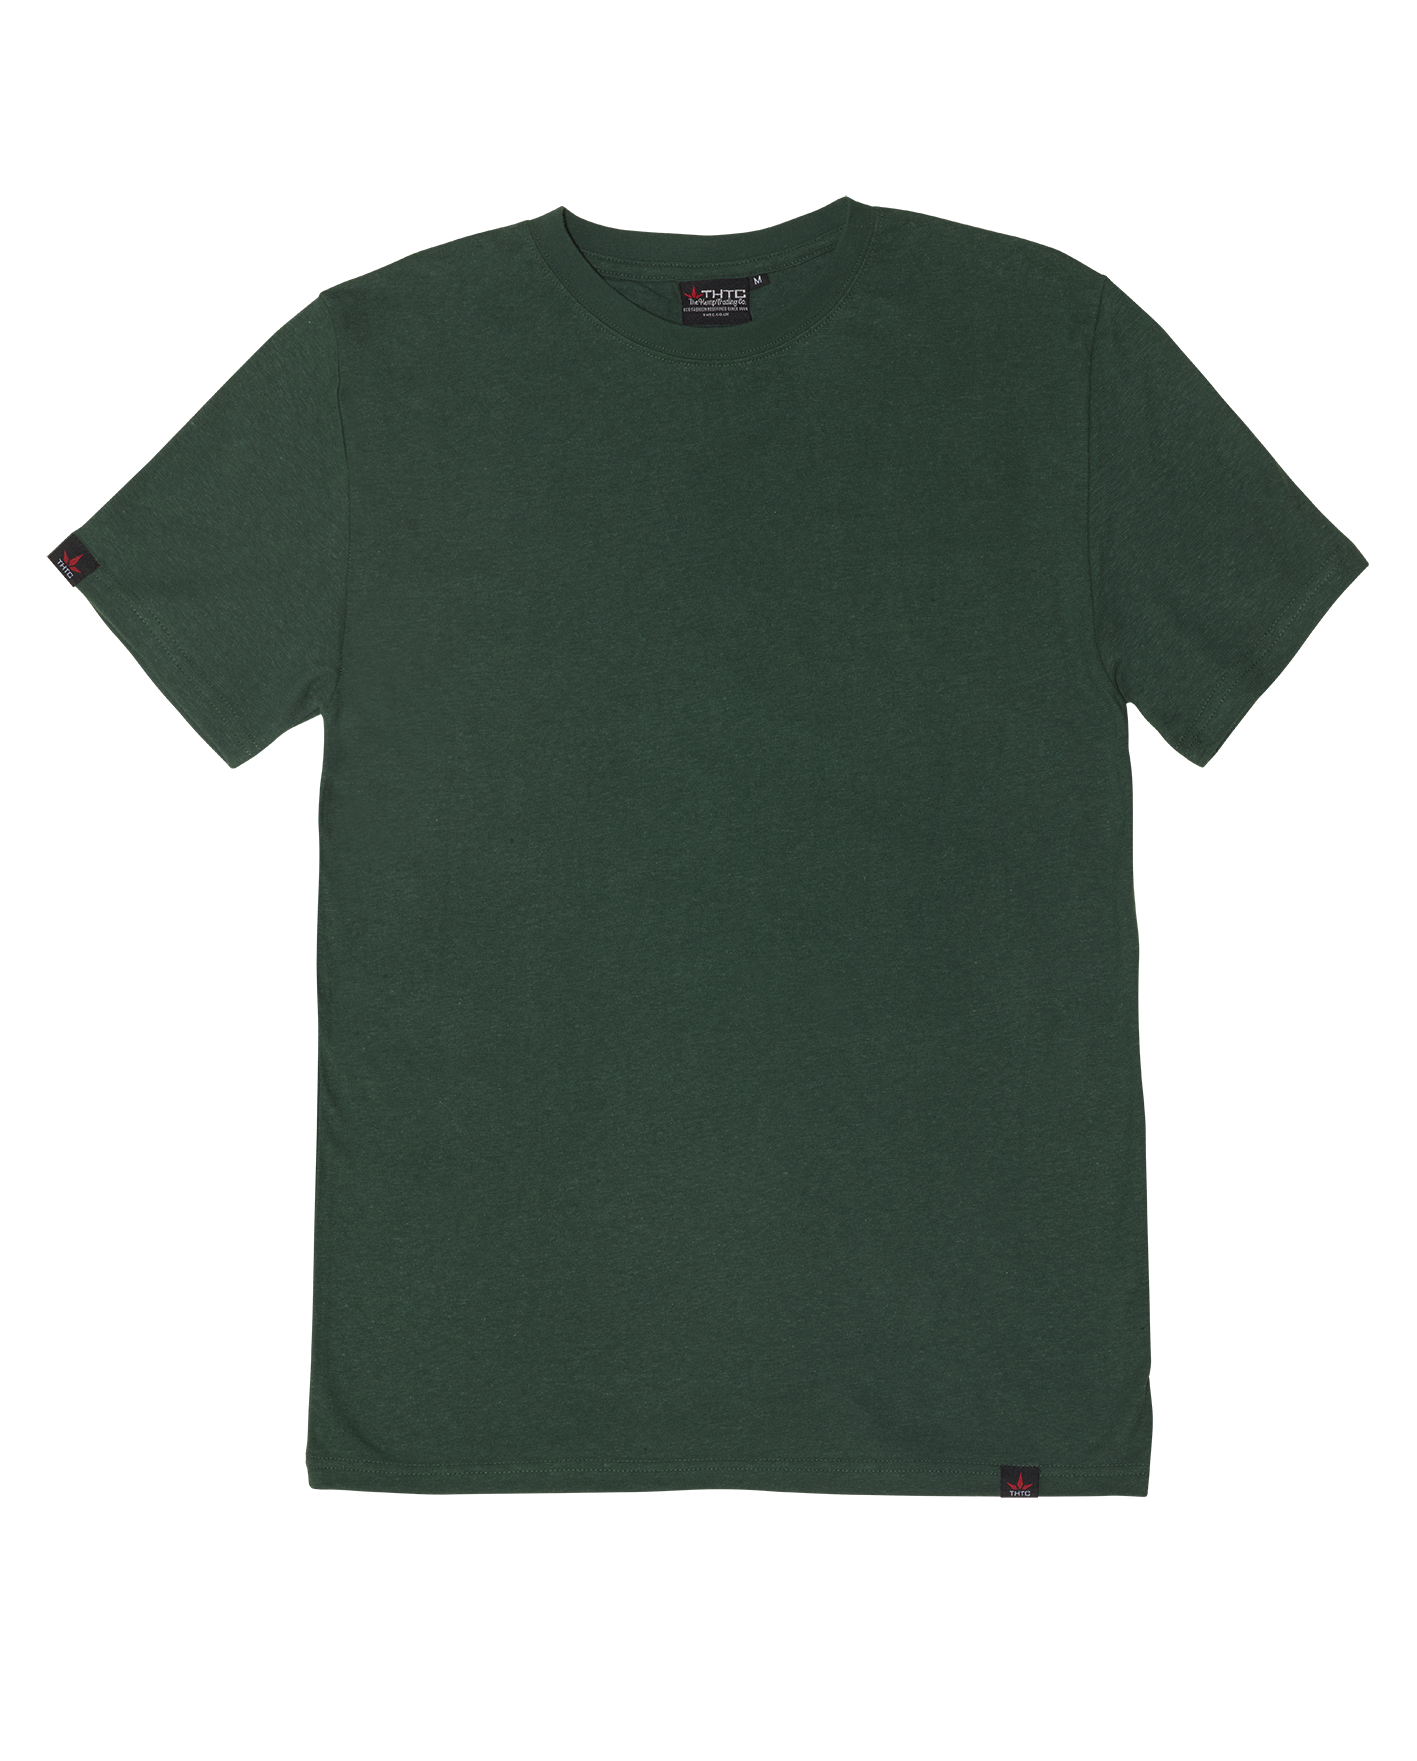 Hemp Originals T-Shirt - Bottle Green